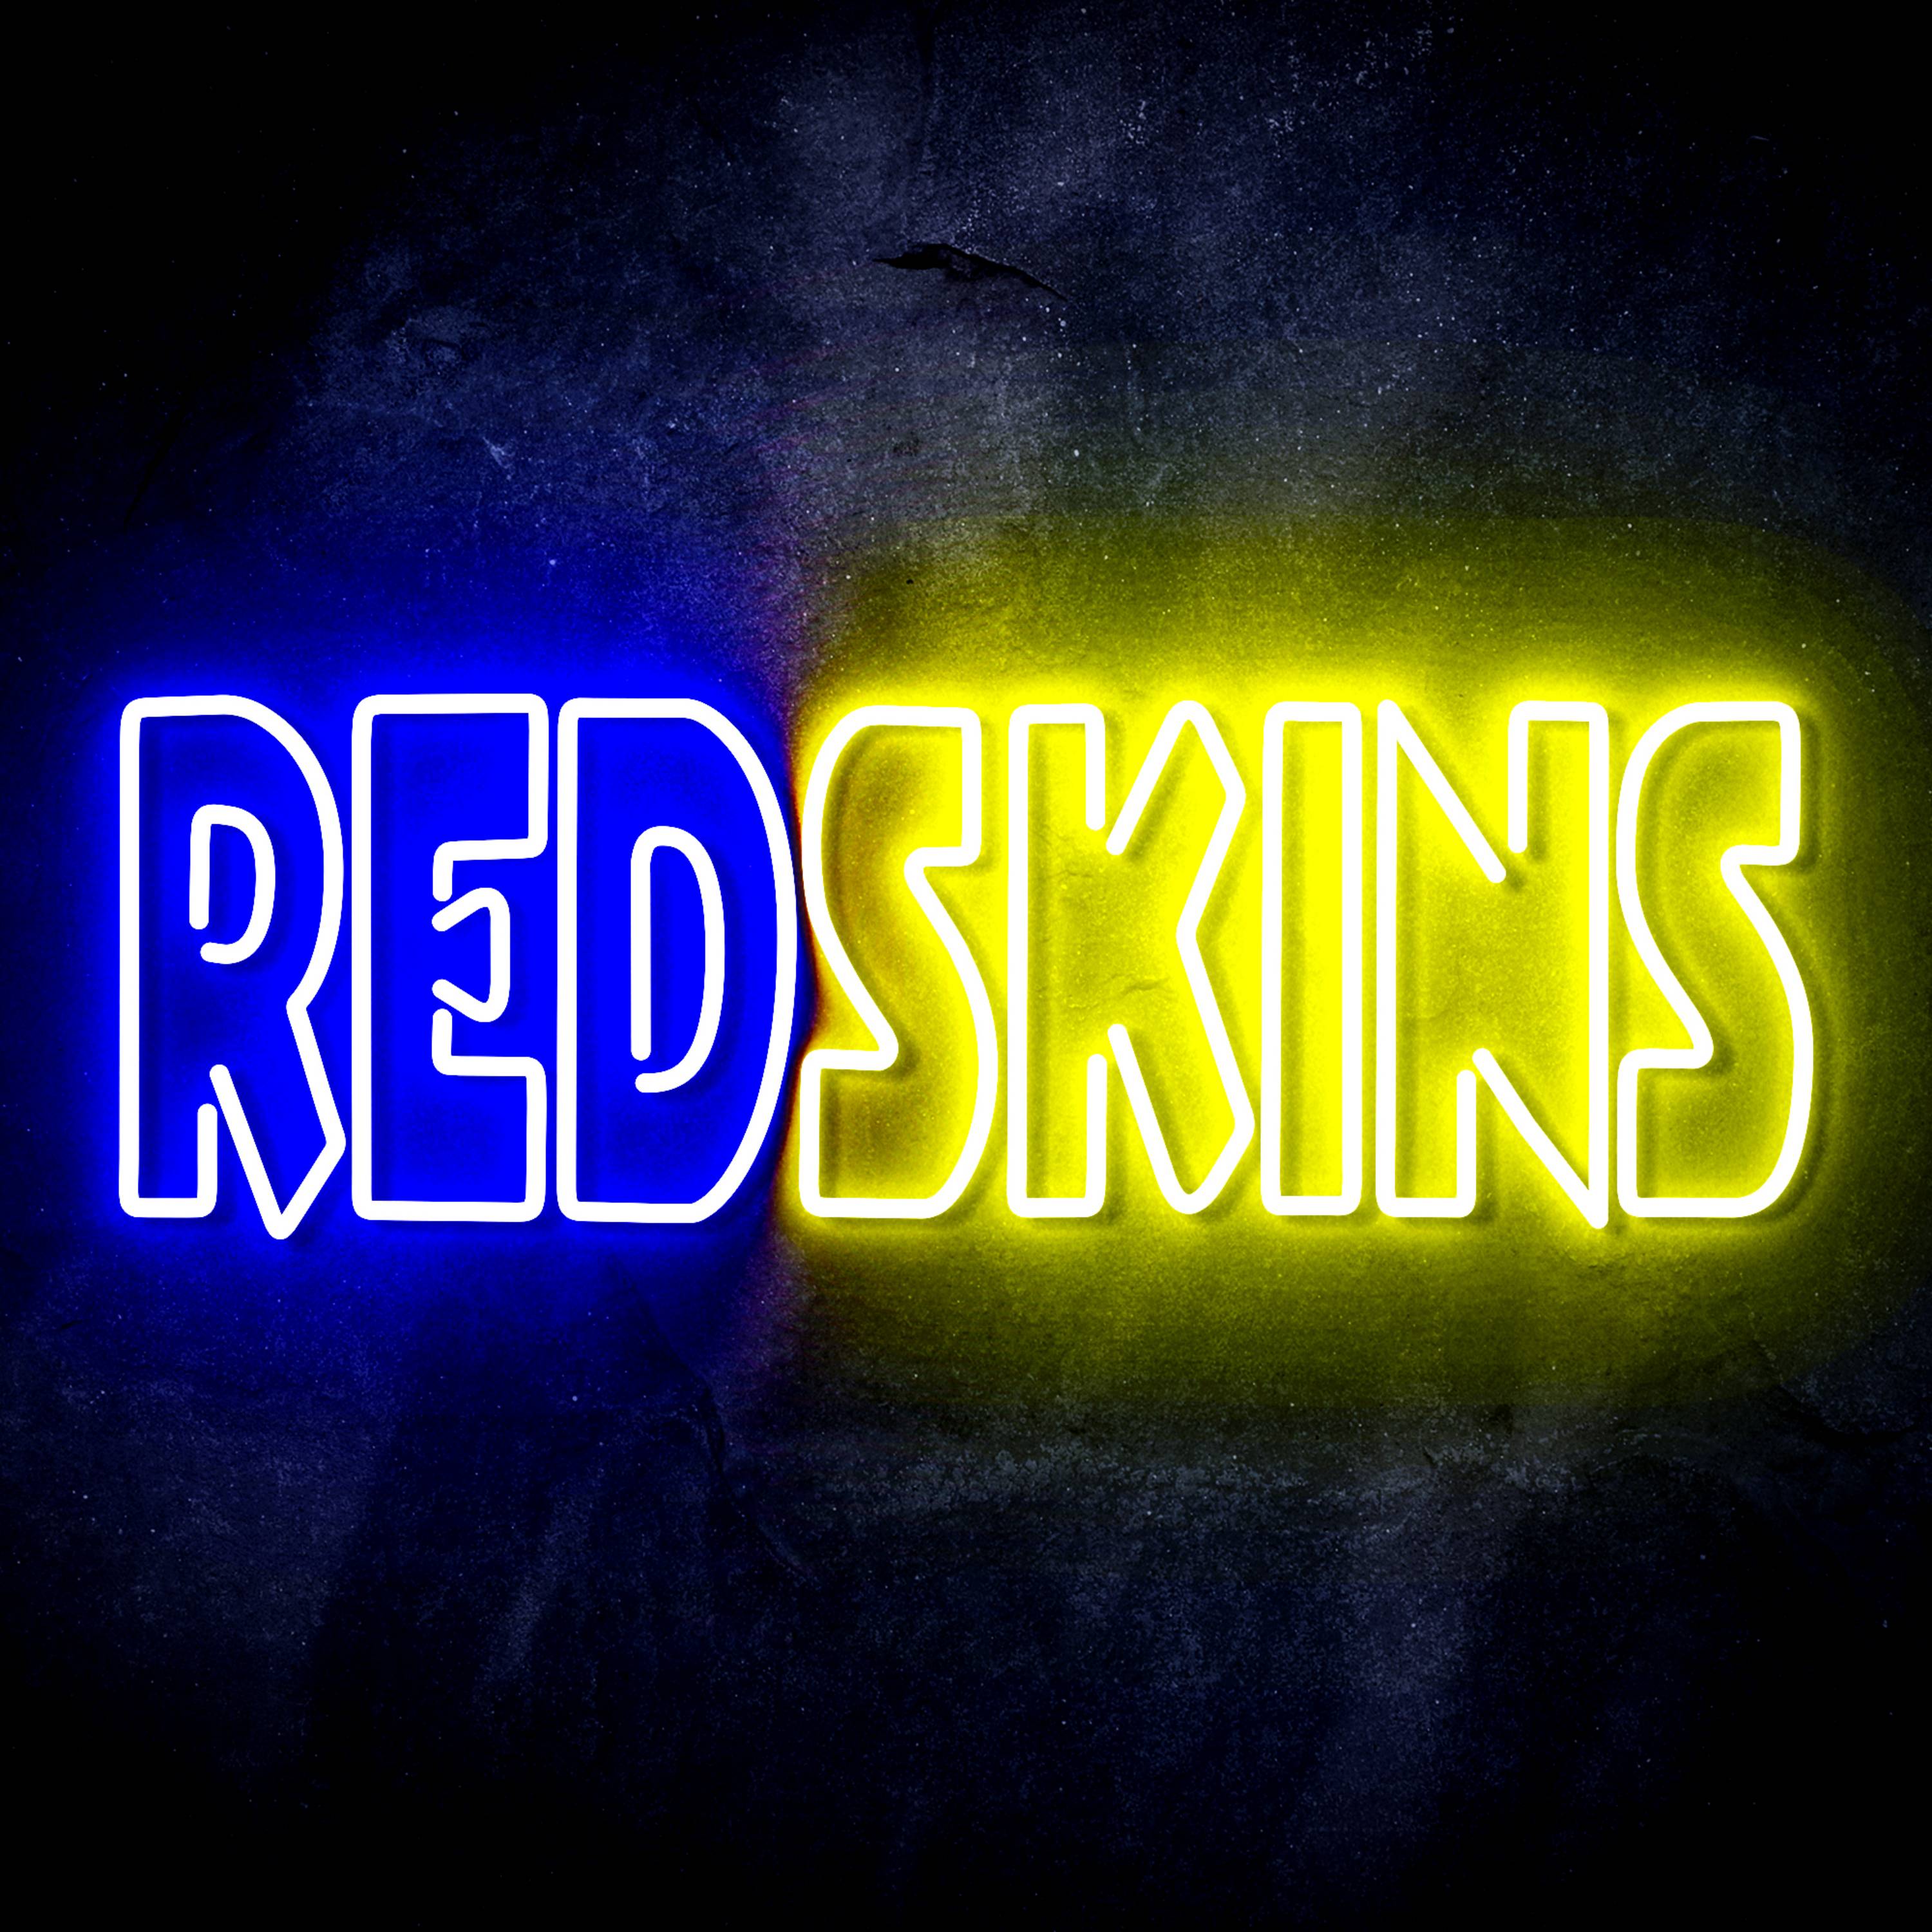 NFL REDSKINS LED Neon Sign